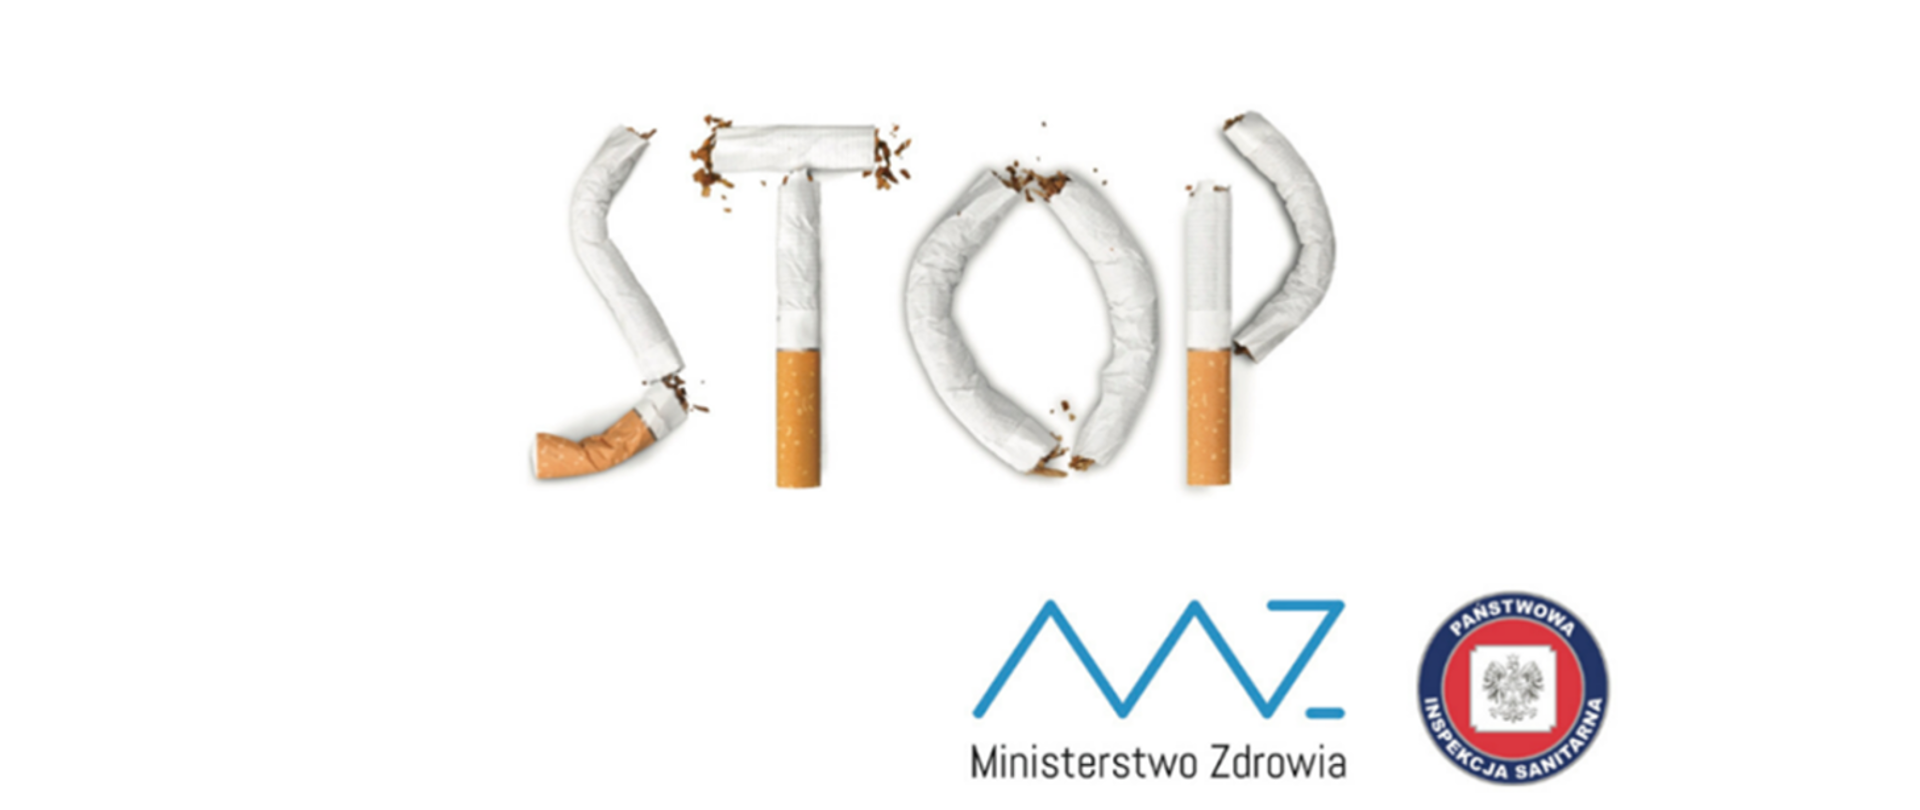 Zdjęcie przedstawia napis Stop ułożony z papierosów pod spodem mamy logo ministerstwa zdrowia i państwowej inspekcji sanitarnej